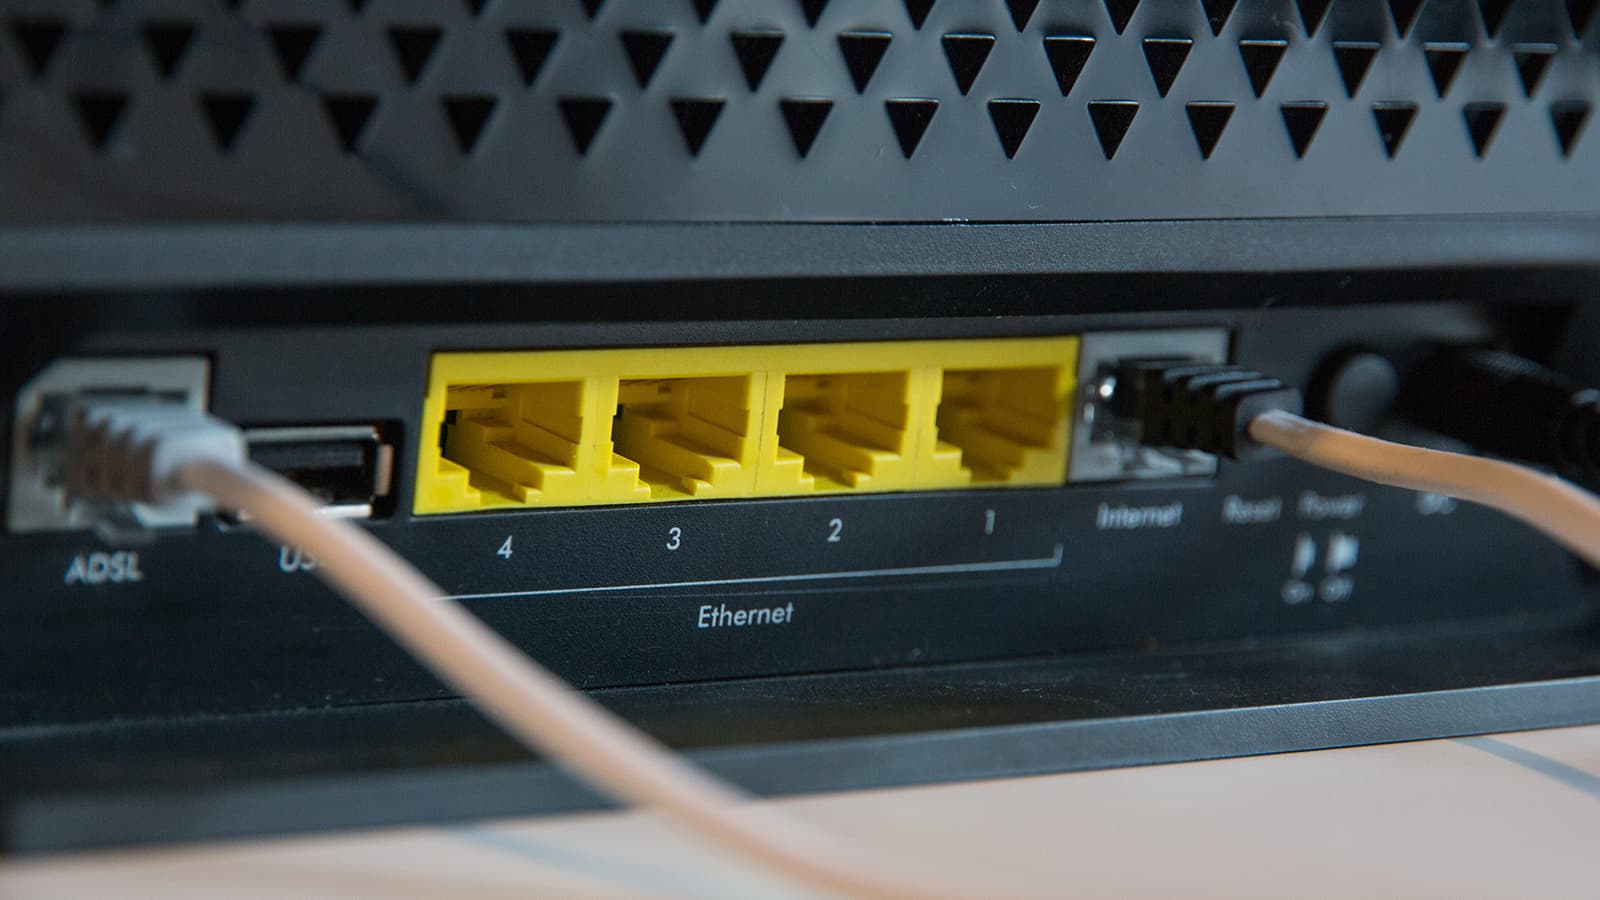 Verifique se o Xbox está conectado à Internet.
Verifique se o cabo Ethernet ou a conexão Wi-Fi está funcionando corretamente.